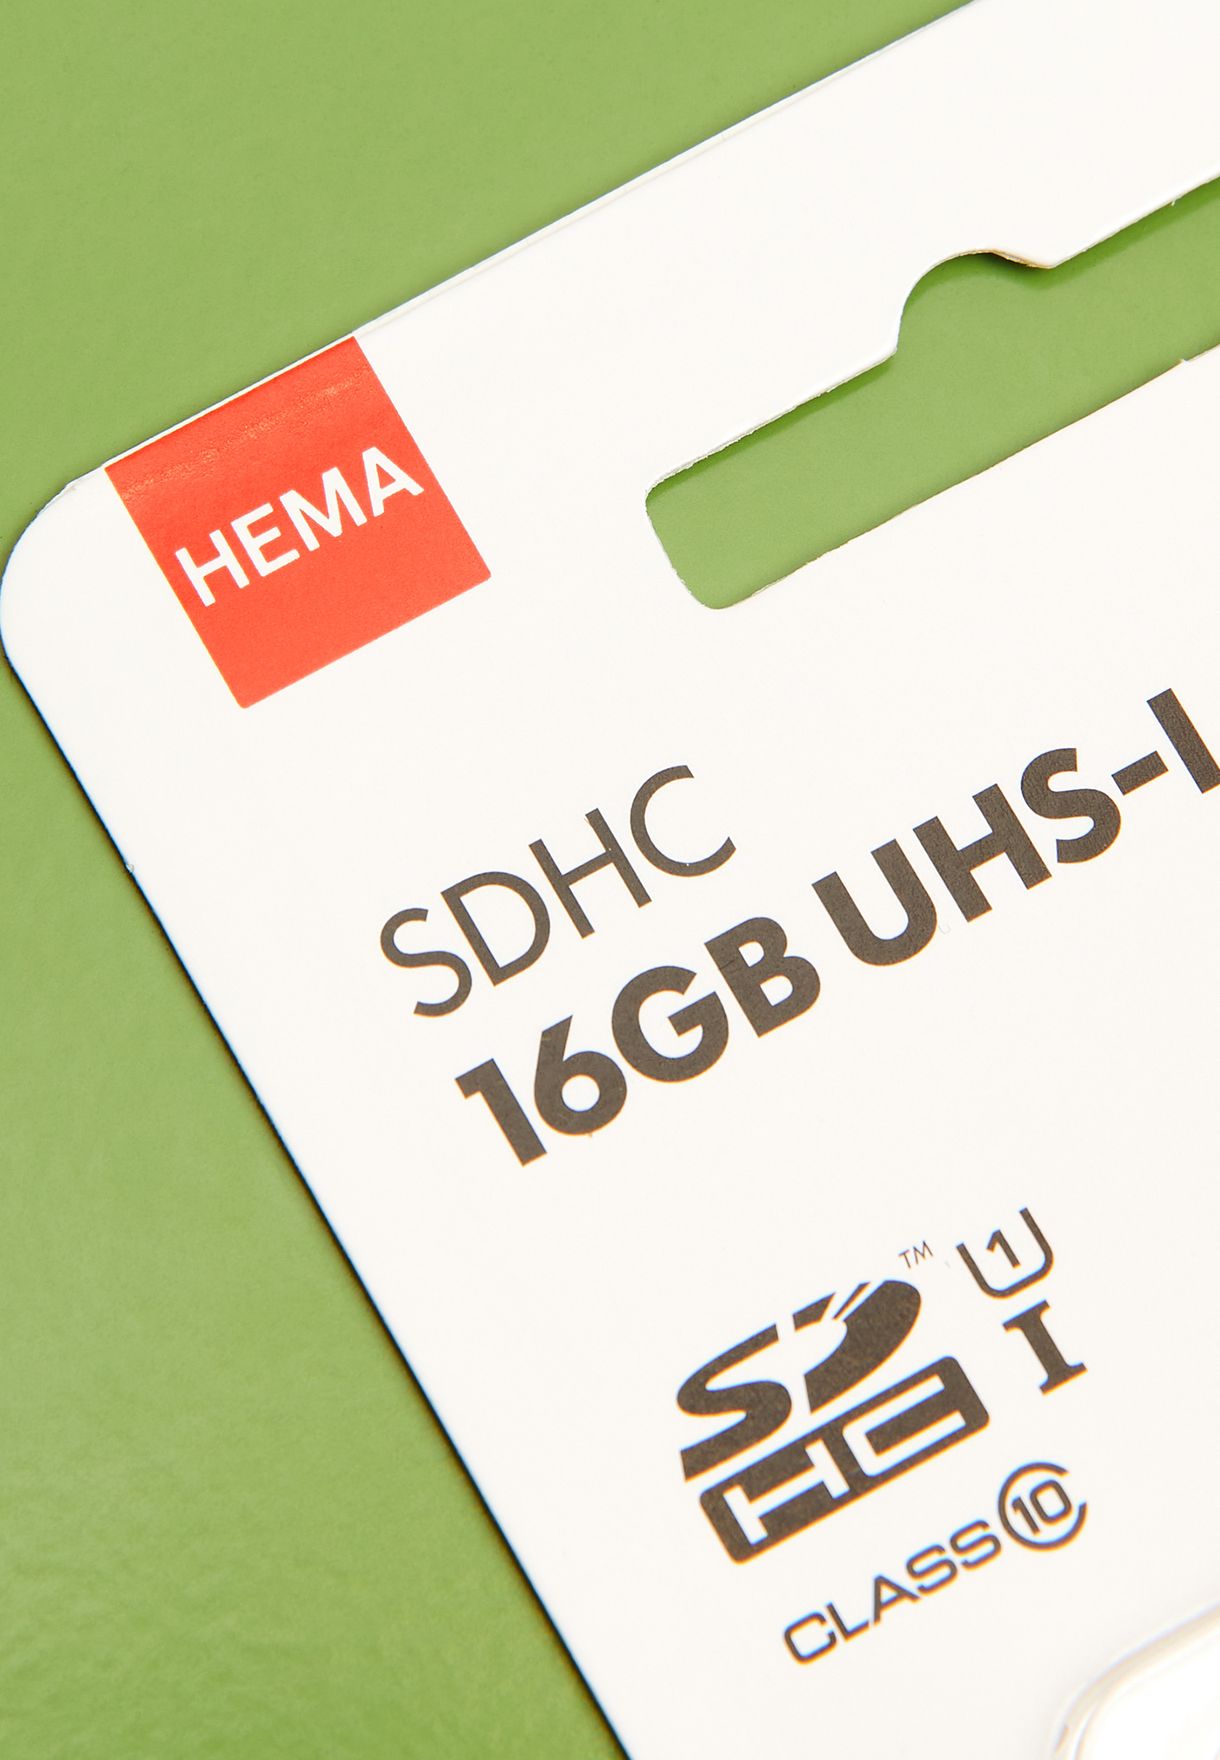 SD Card 16Gb